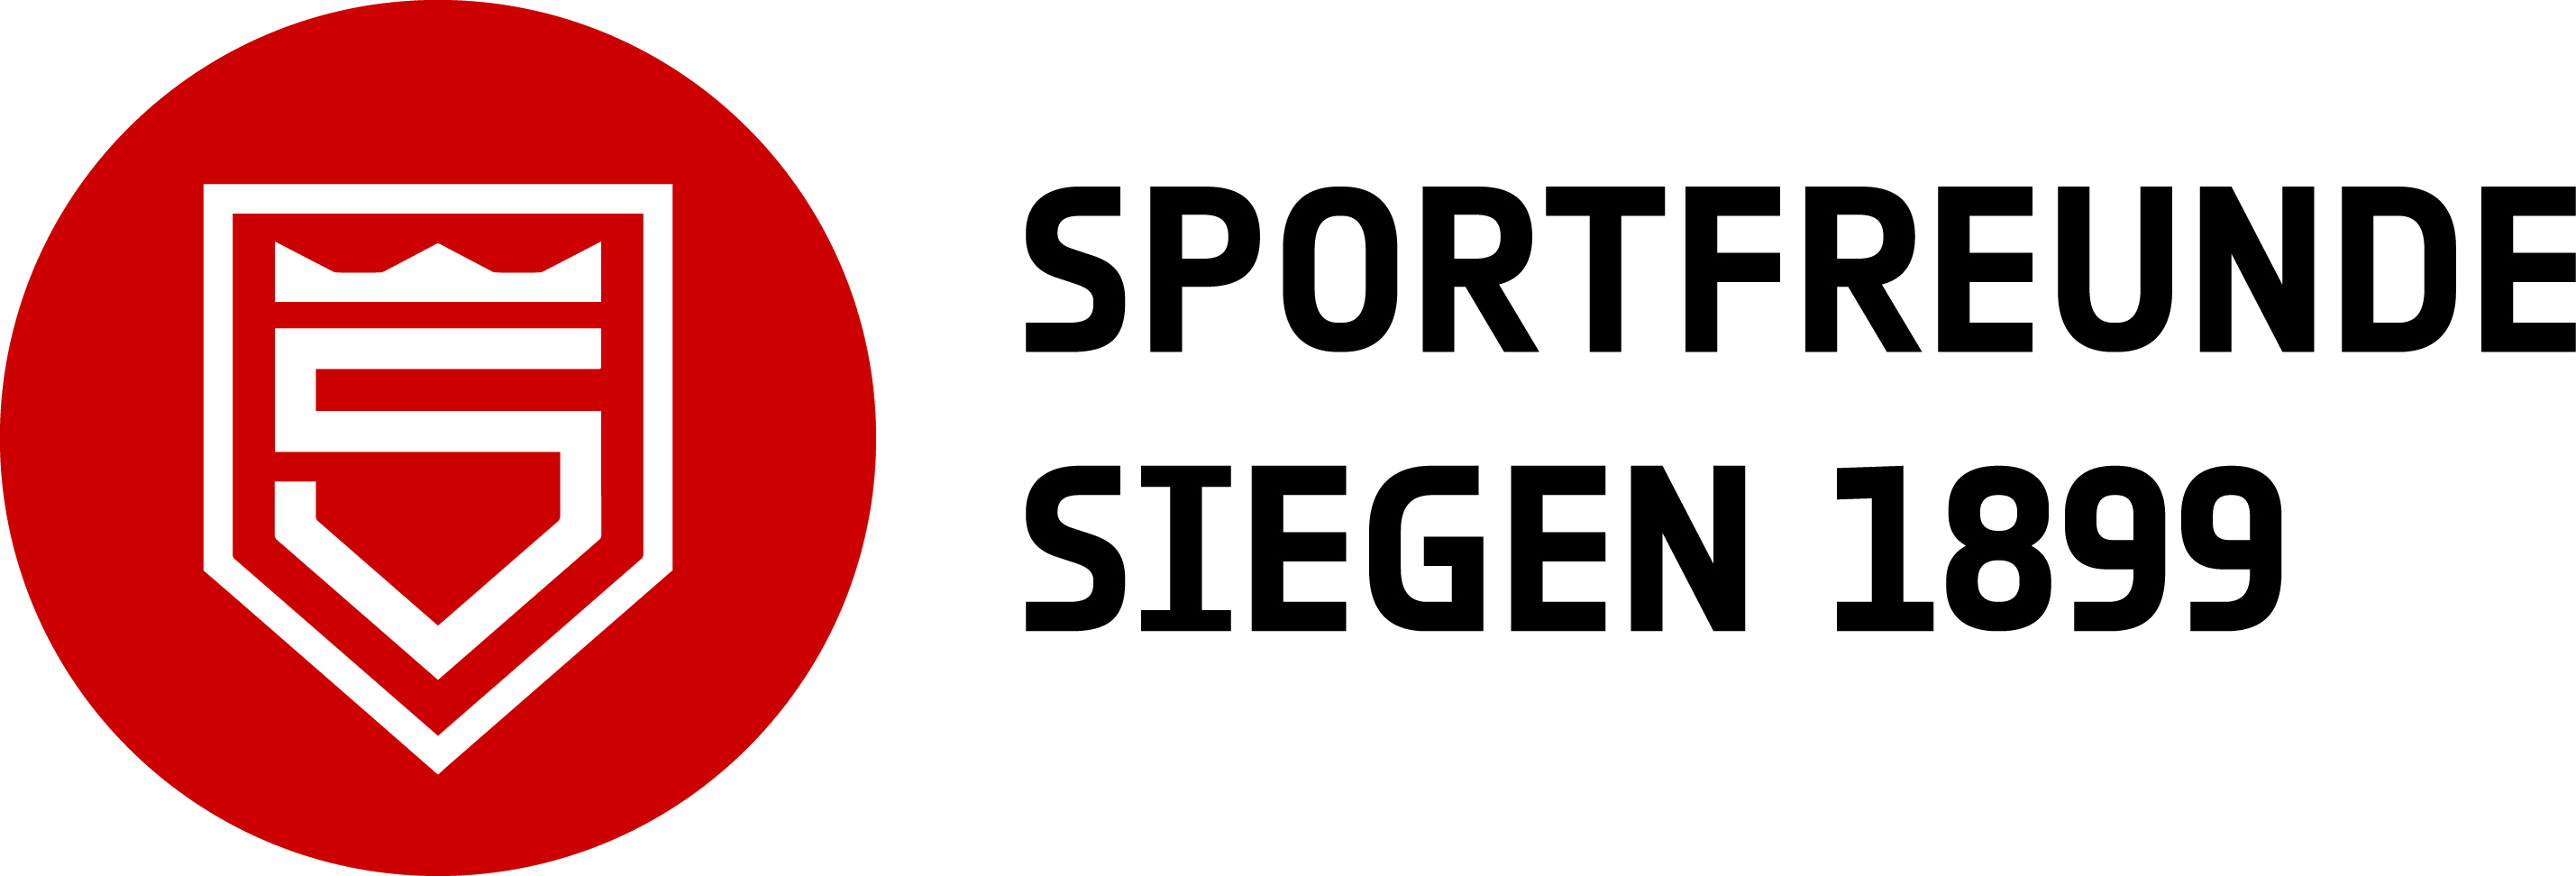 Sportfreunde Siegen - Tradition seit 1899